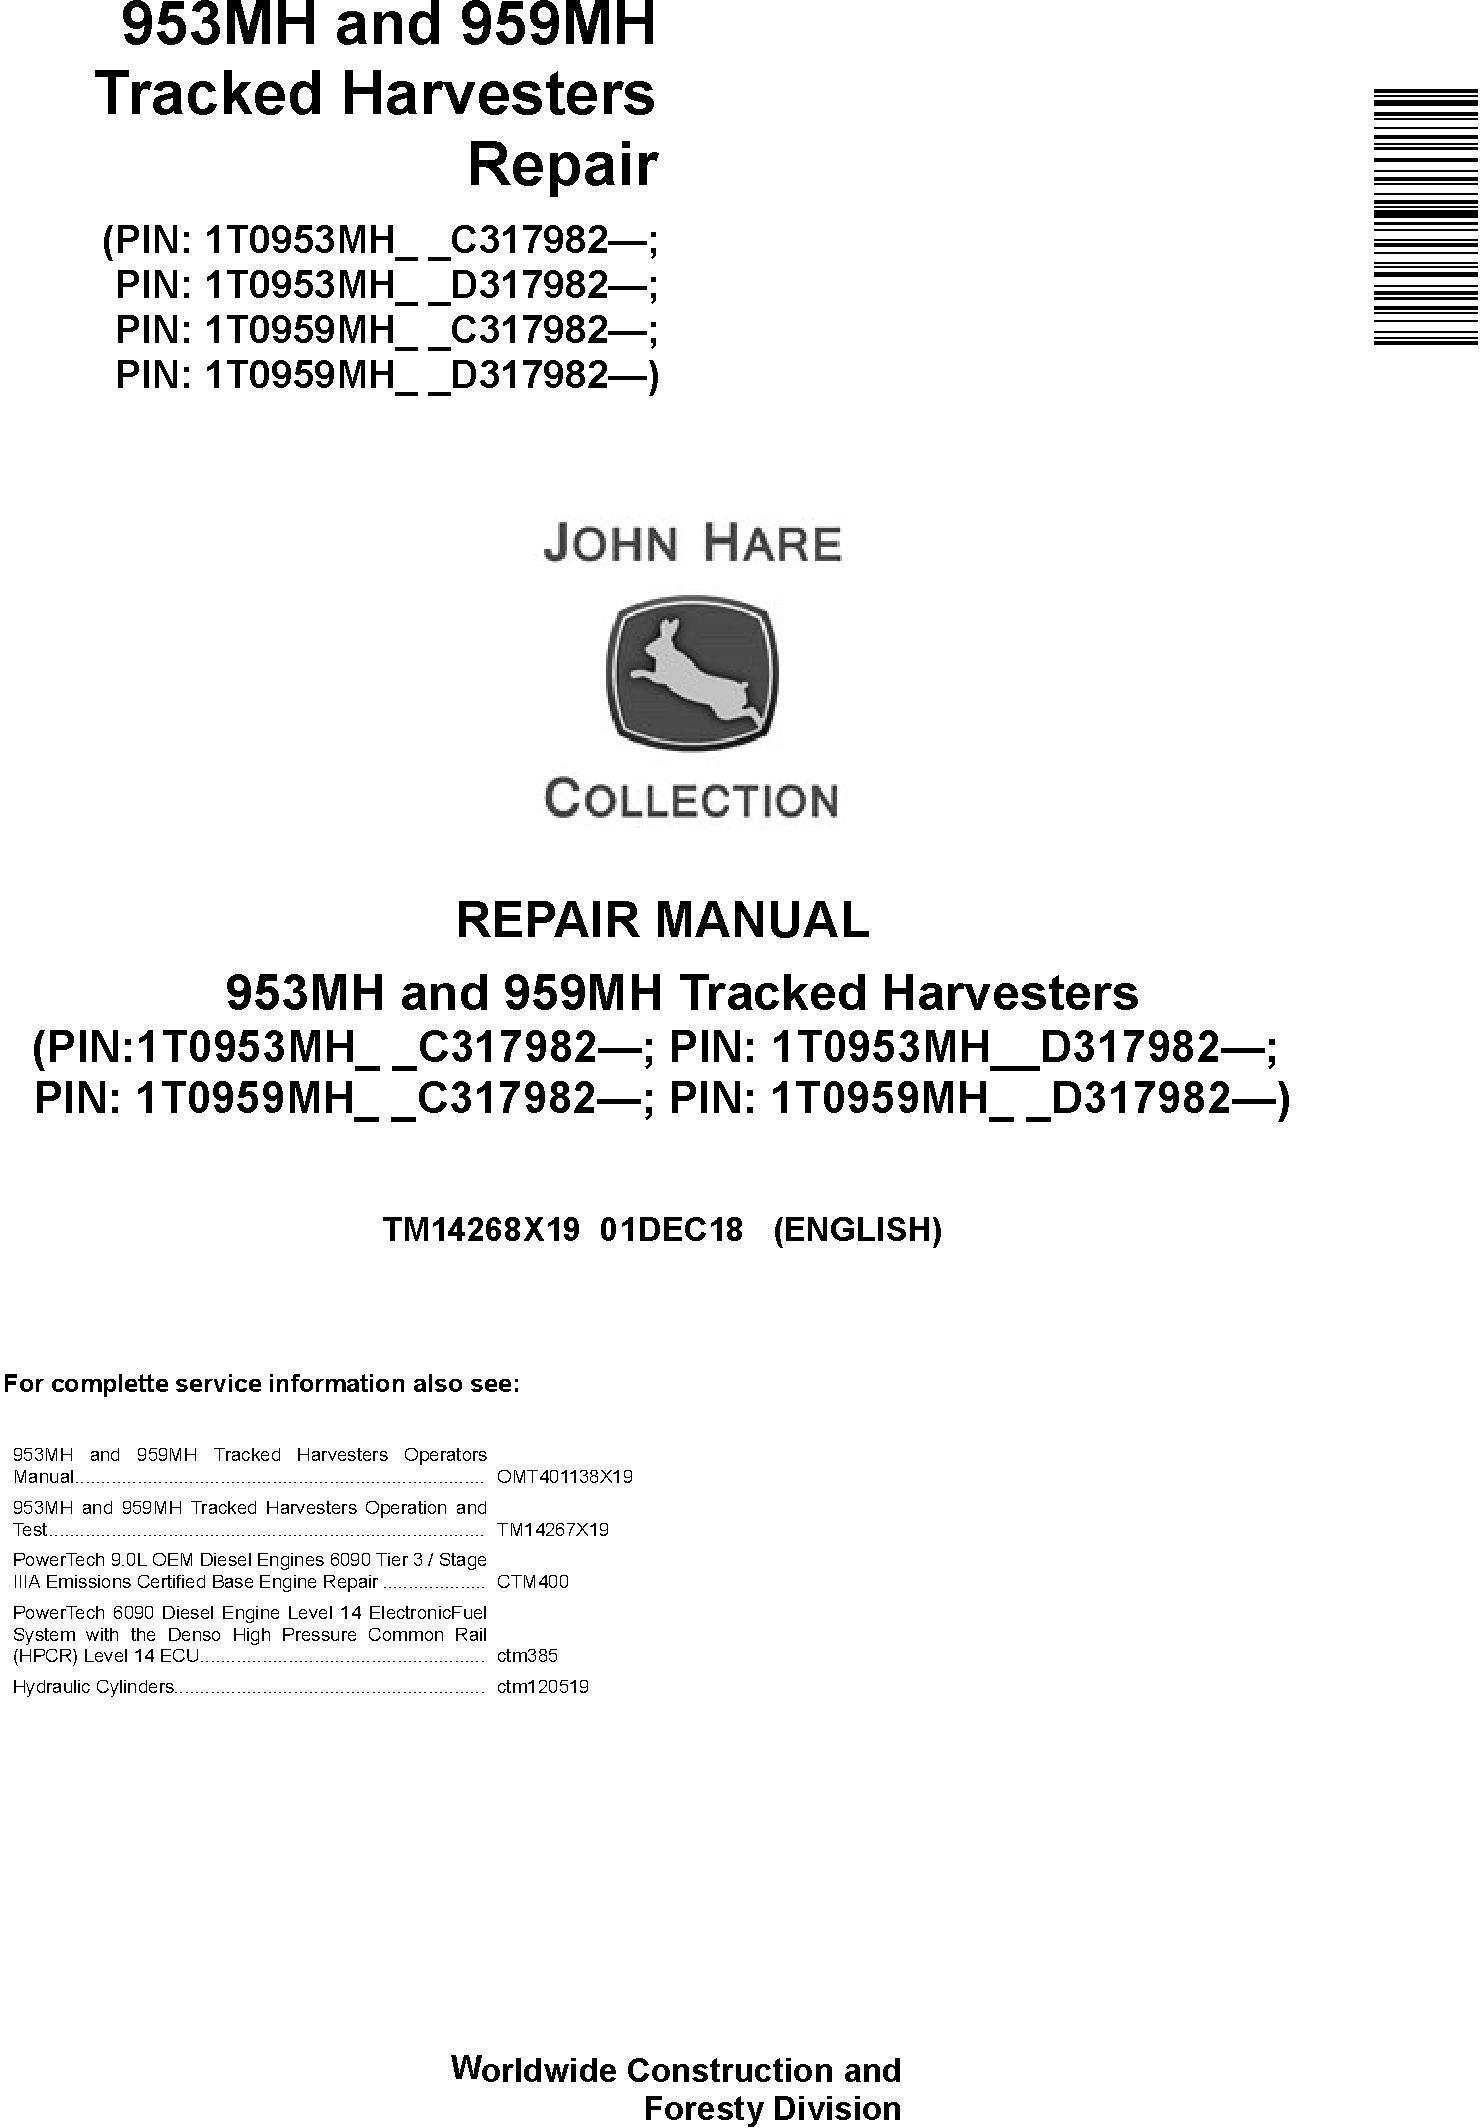 John Deere 953MH, 959MH (SN.C317982-,D317982-) Tracked Harvesters Service Repair Manual (TM14268X19) - 19182